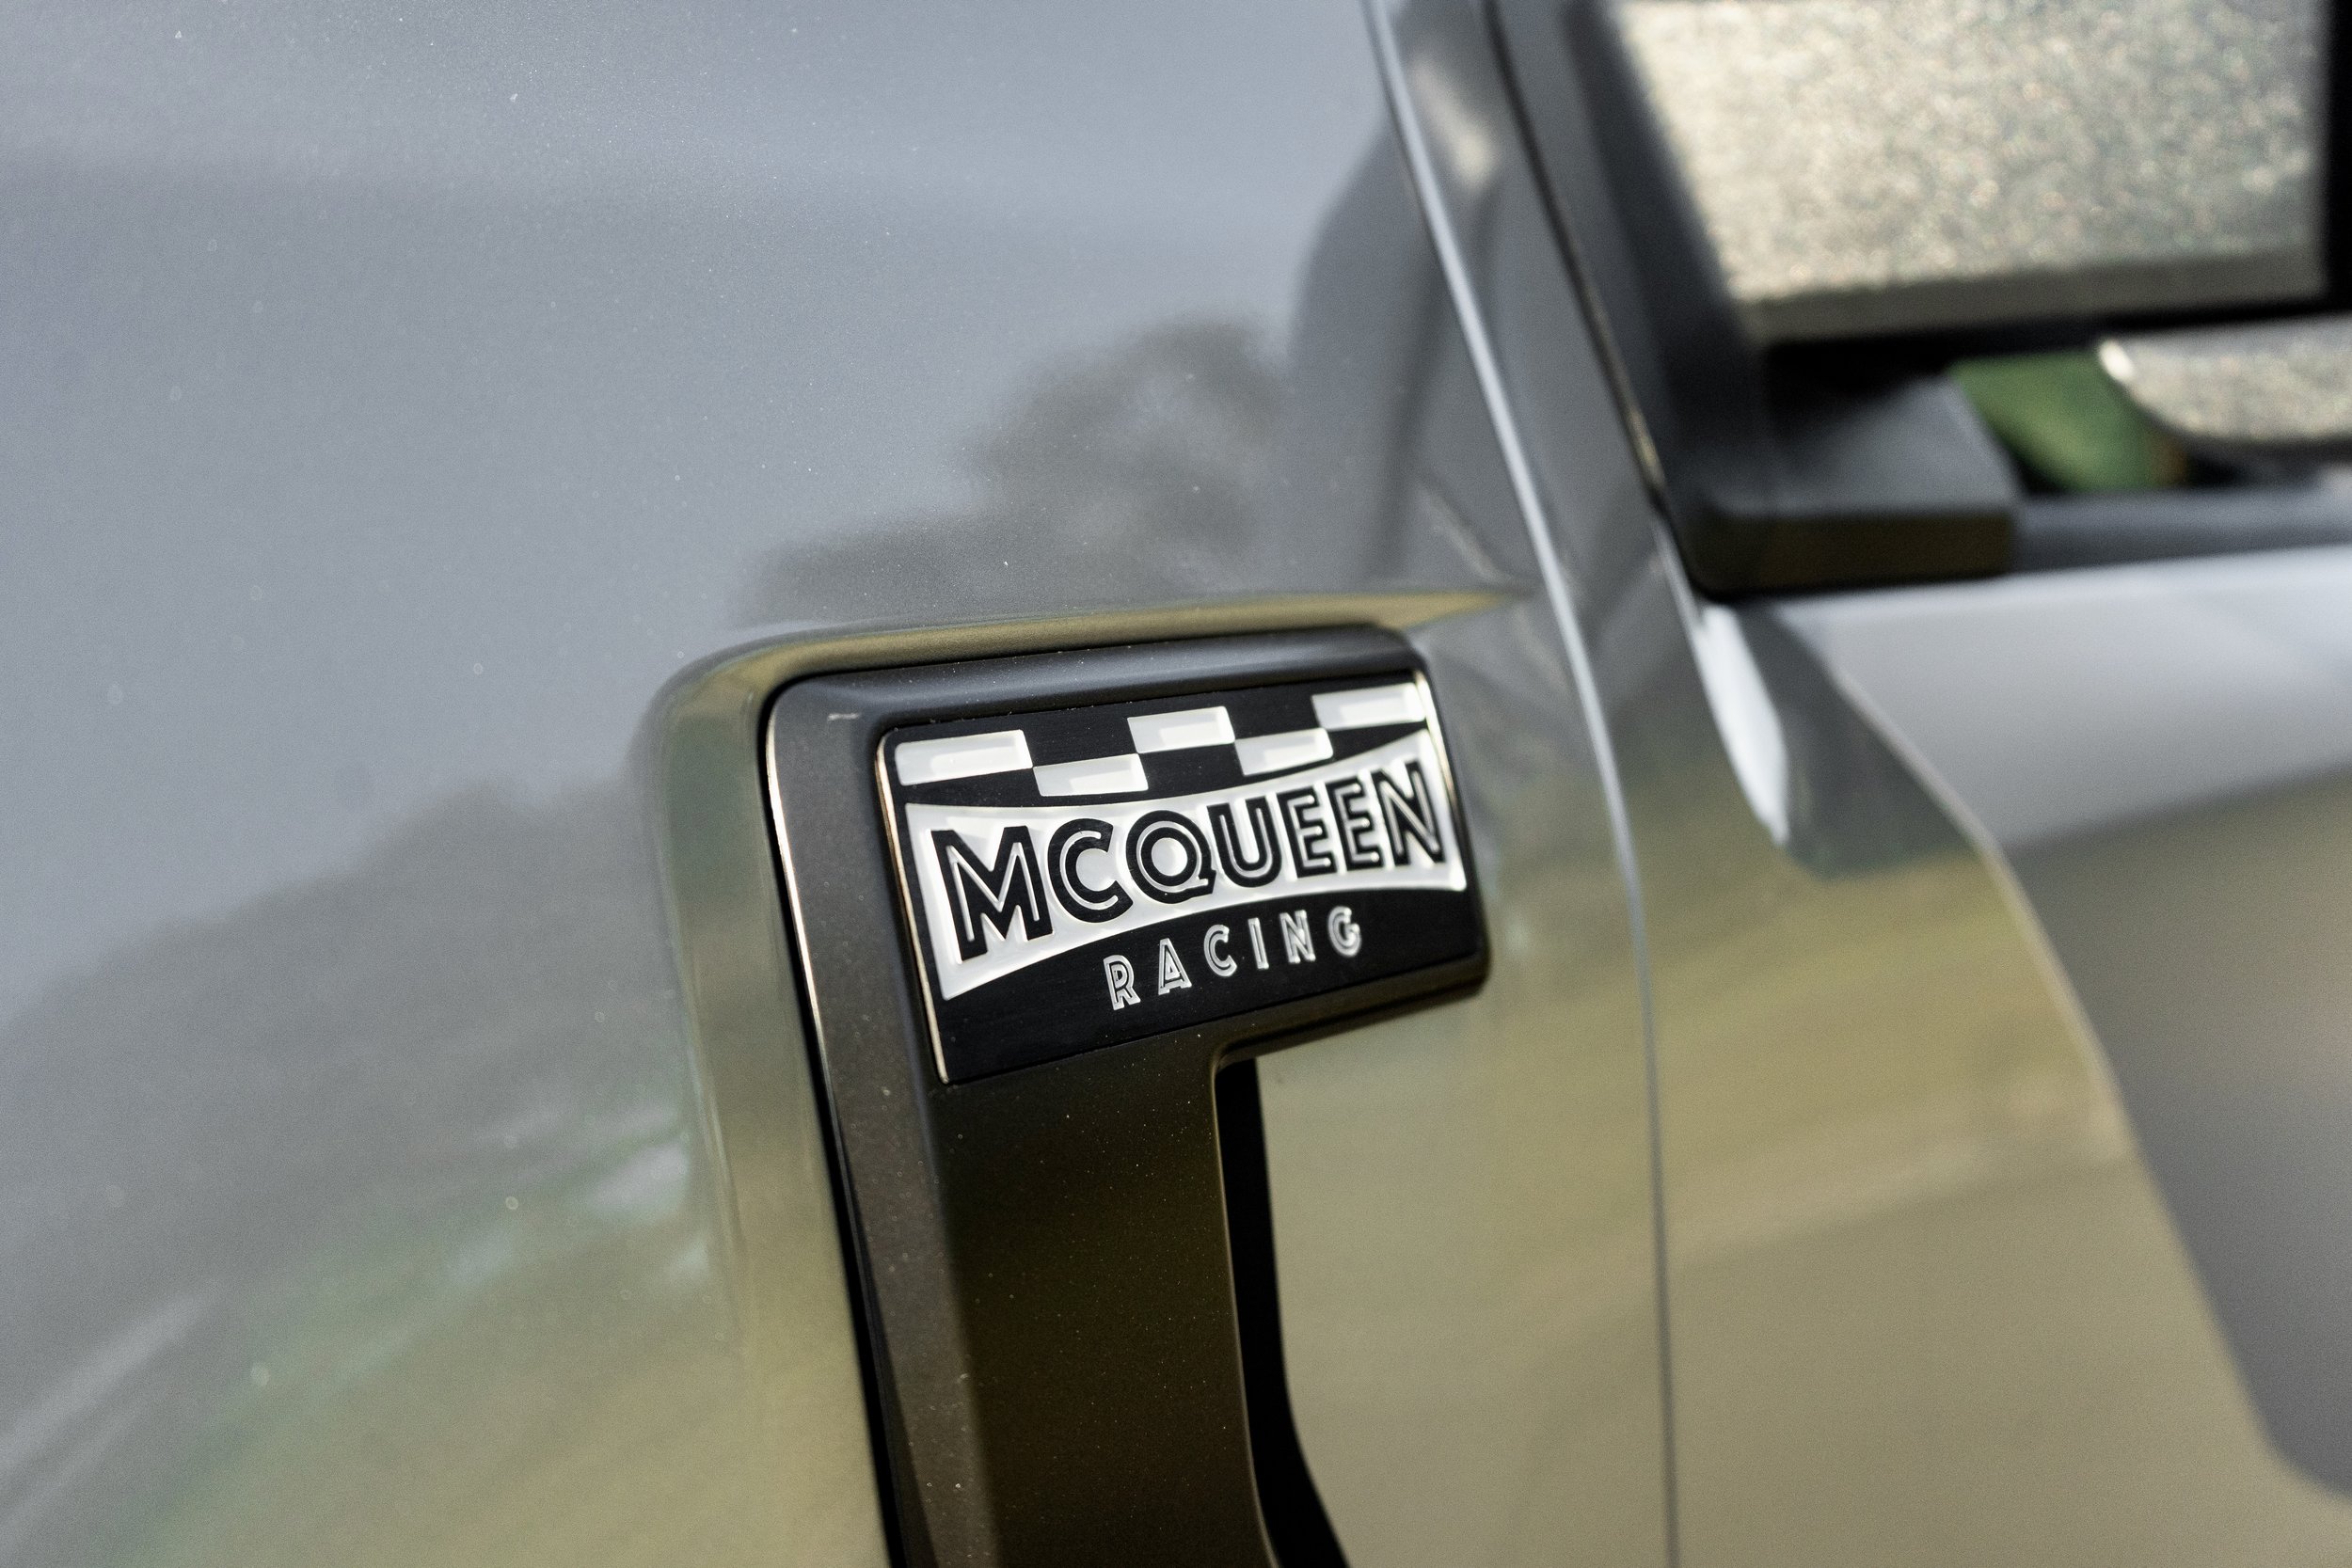 McQueen Racing F-150 - 66 fender emblem.jpeg